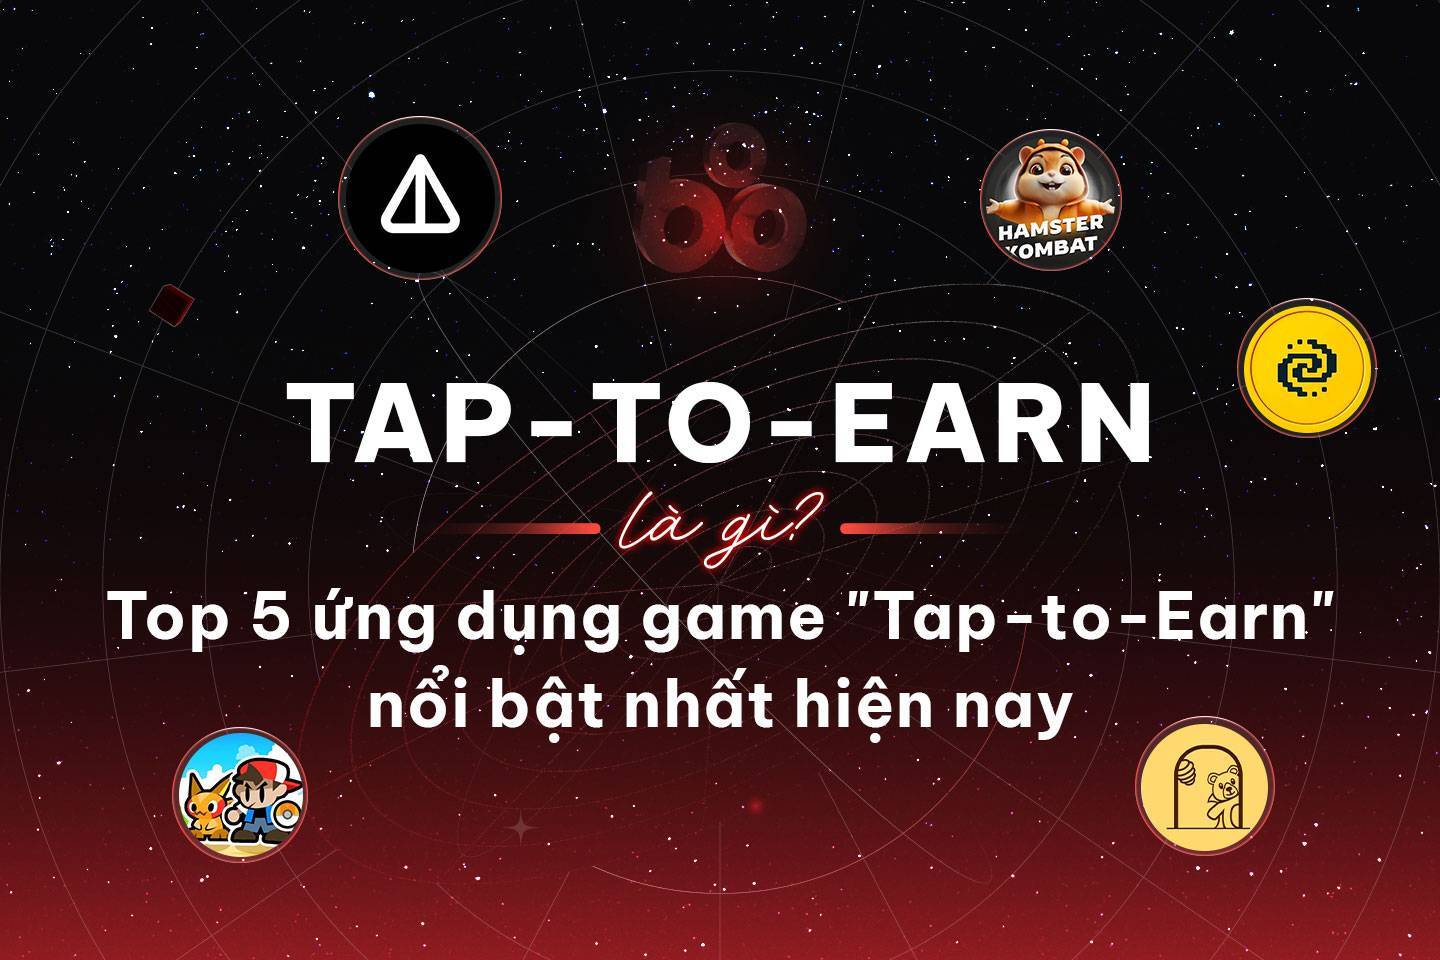 Tap-to-earn Là Gì Top 5 Ứng Dụng Game tap-to-earn Nổi Bật Nhất Hiện Nay